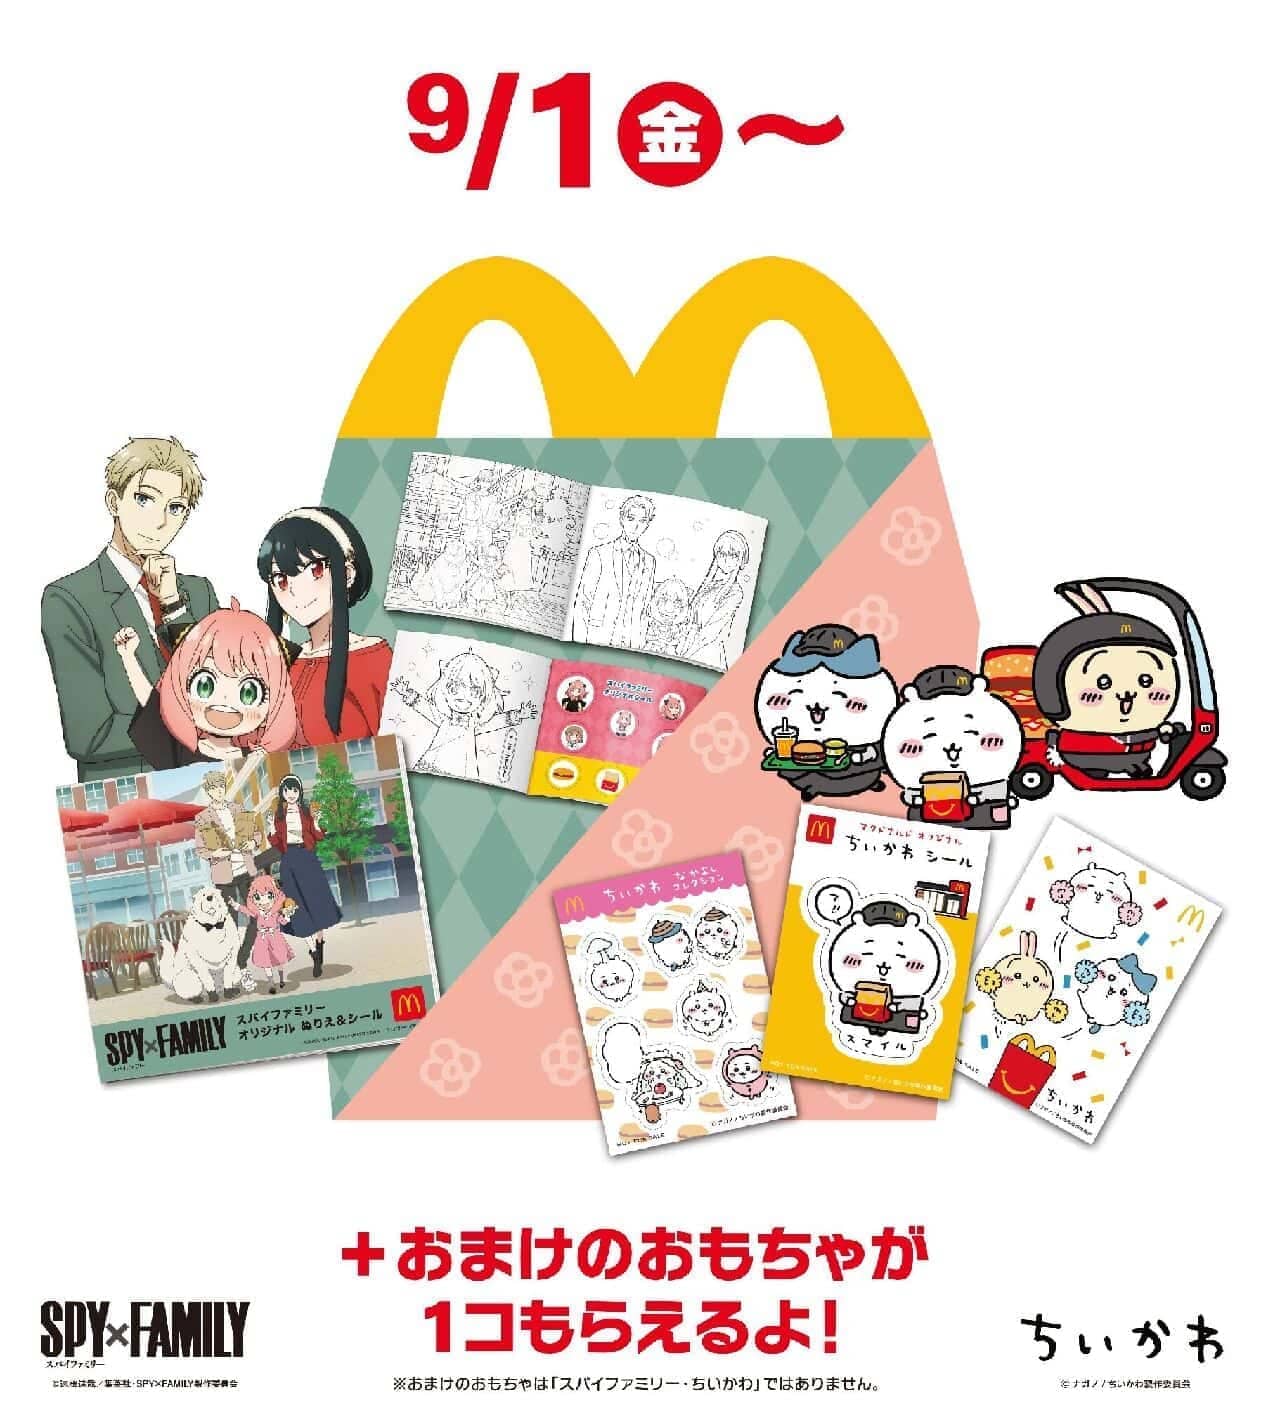 McDonald's Happy Set "SPY x FAMILY" and "Chiisana